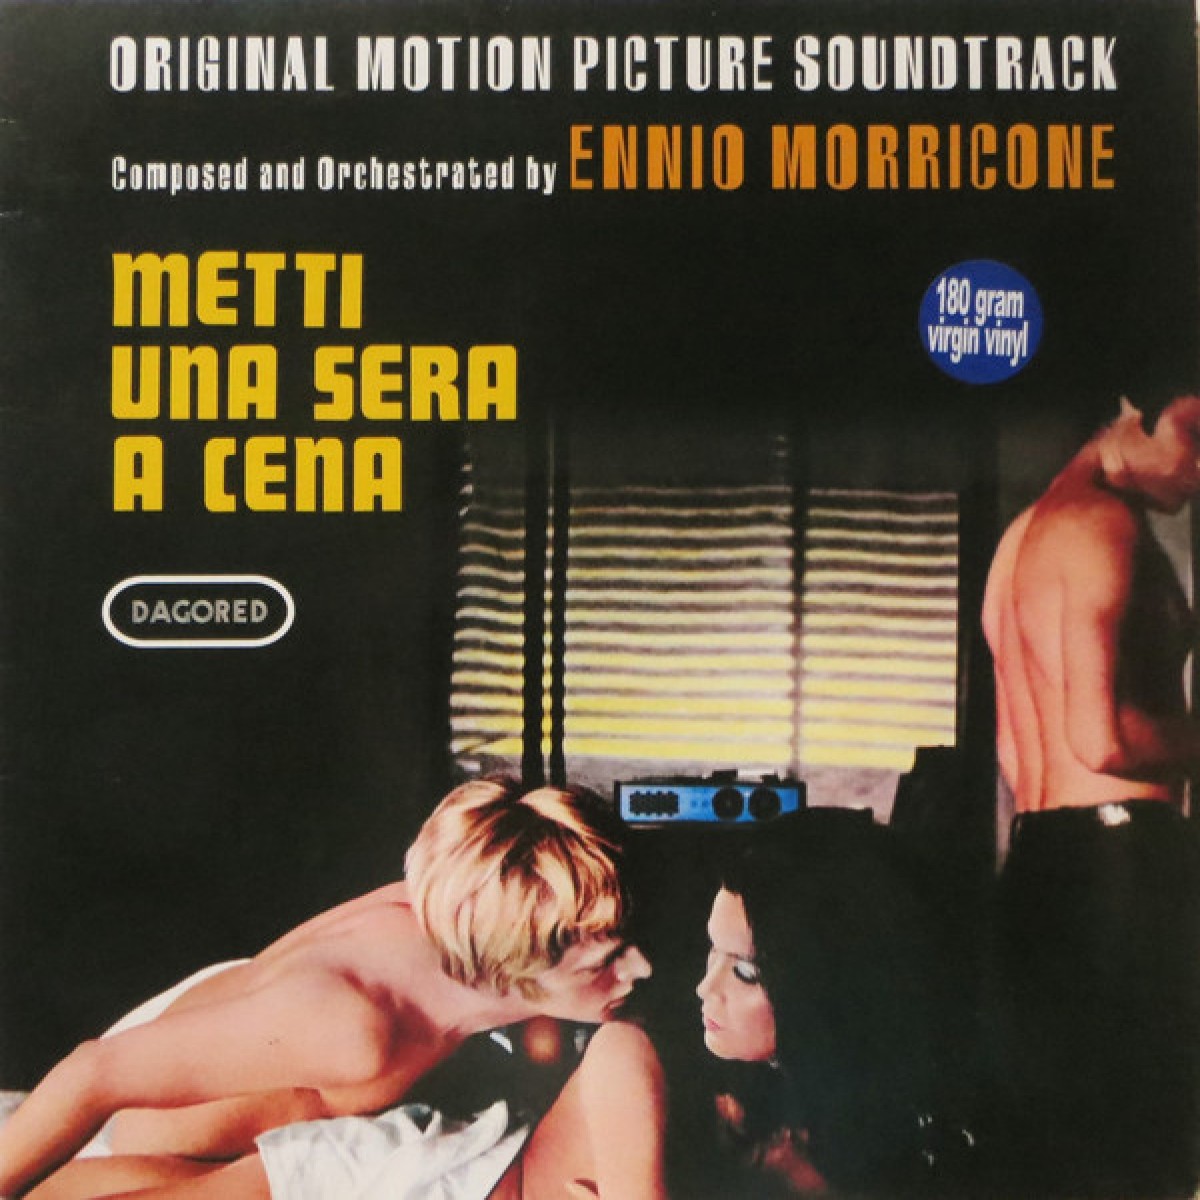 Ennio Morricone/METTI UNA SERA OST LP